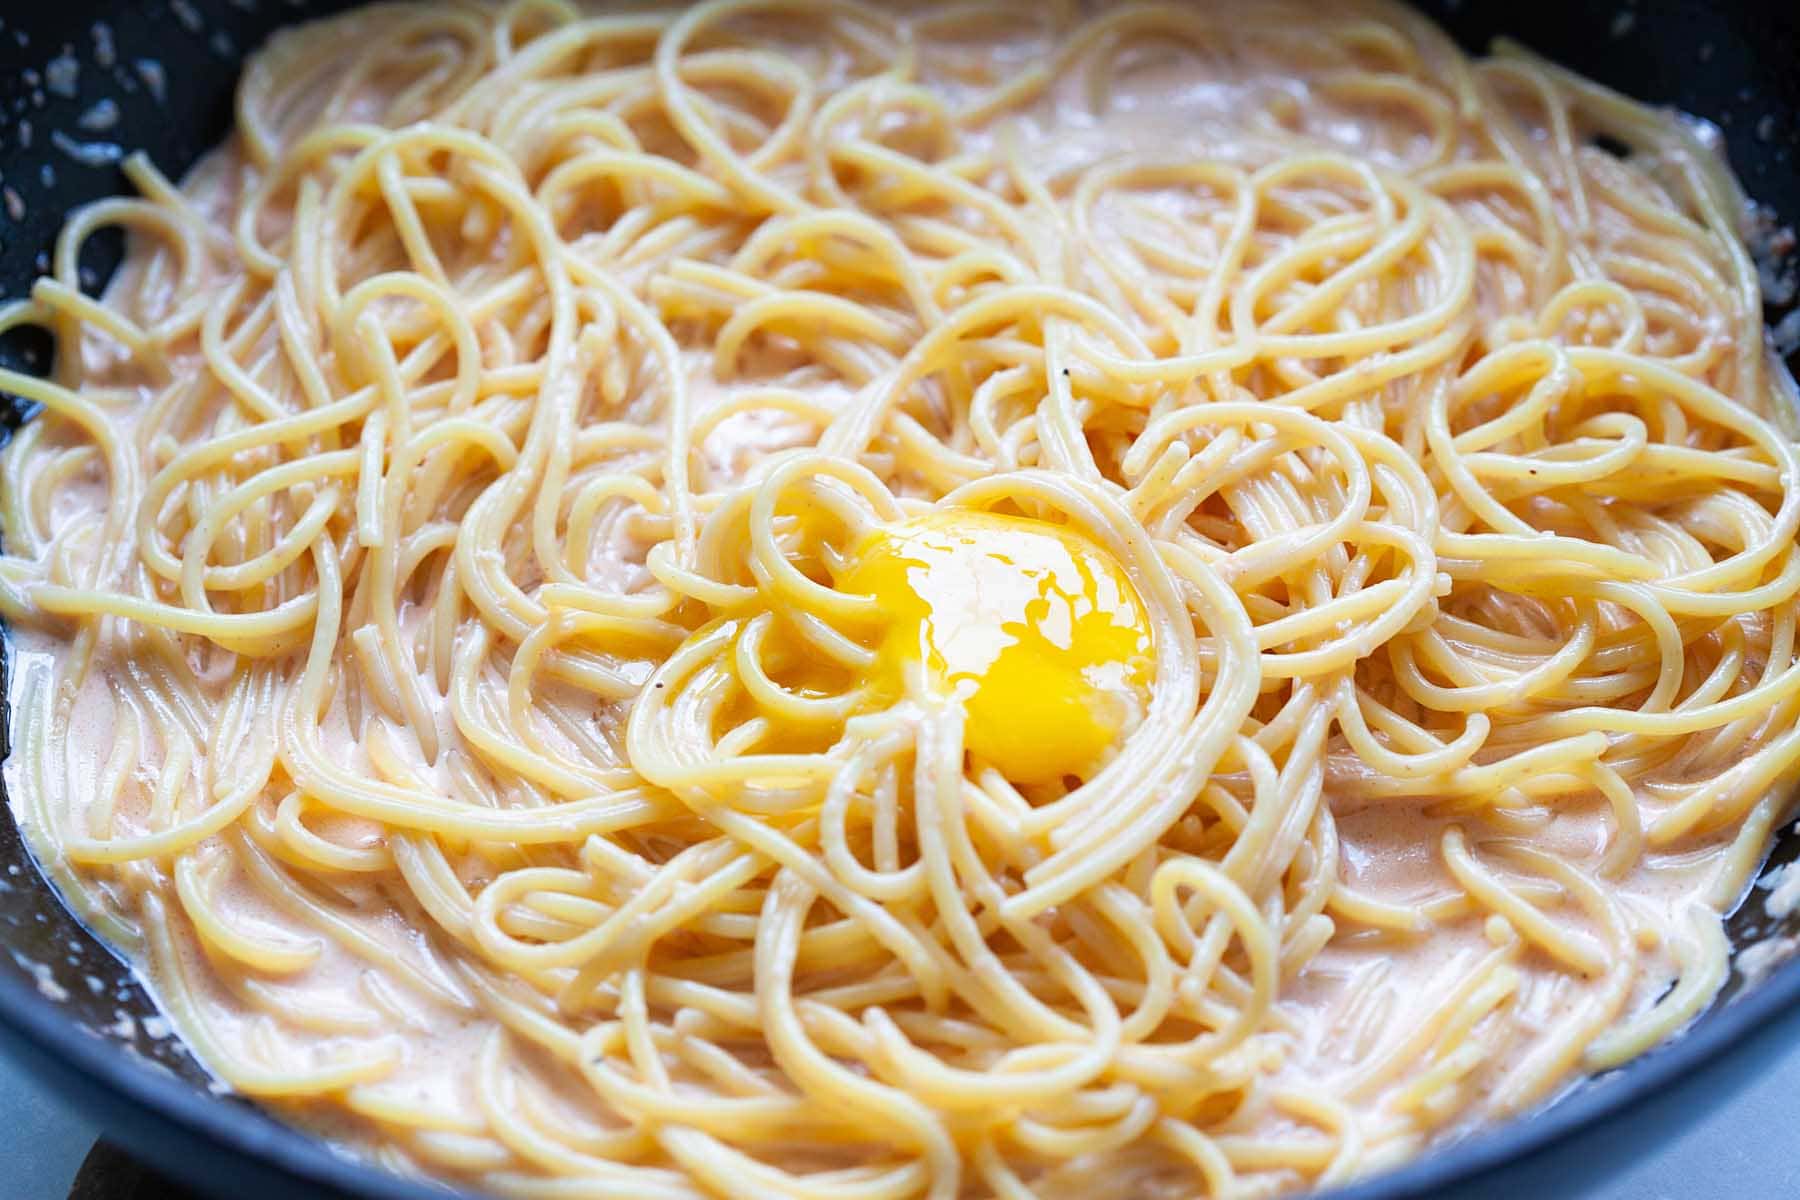 Meitako pasta with Meitako sauce.